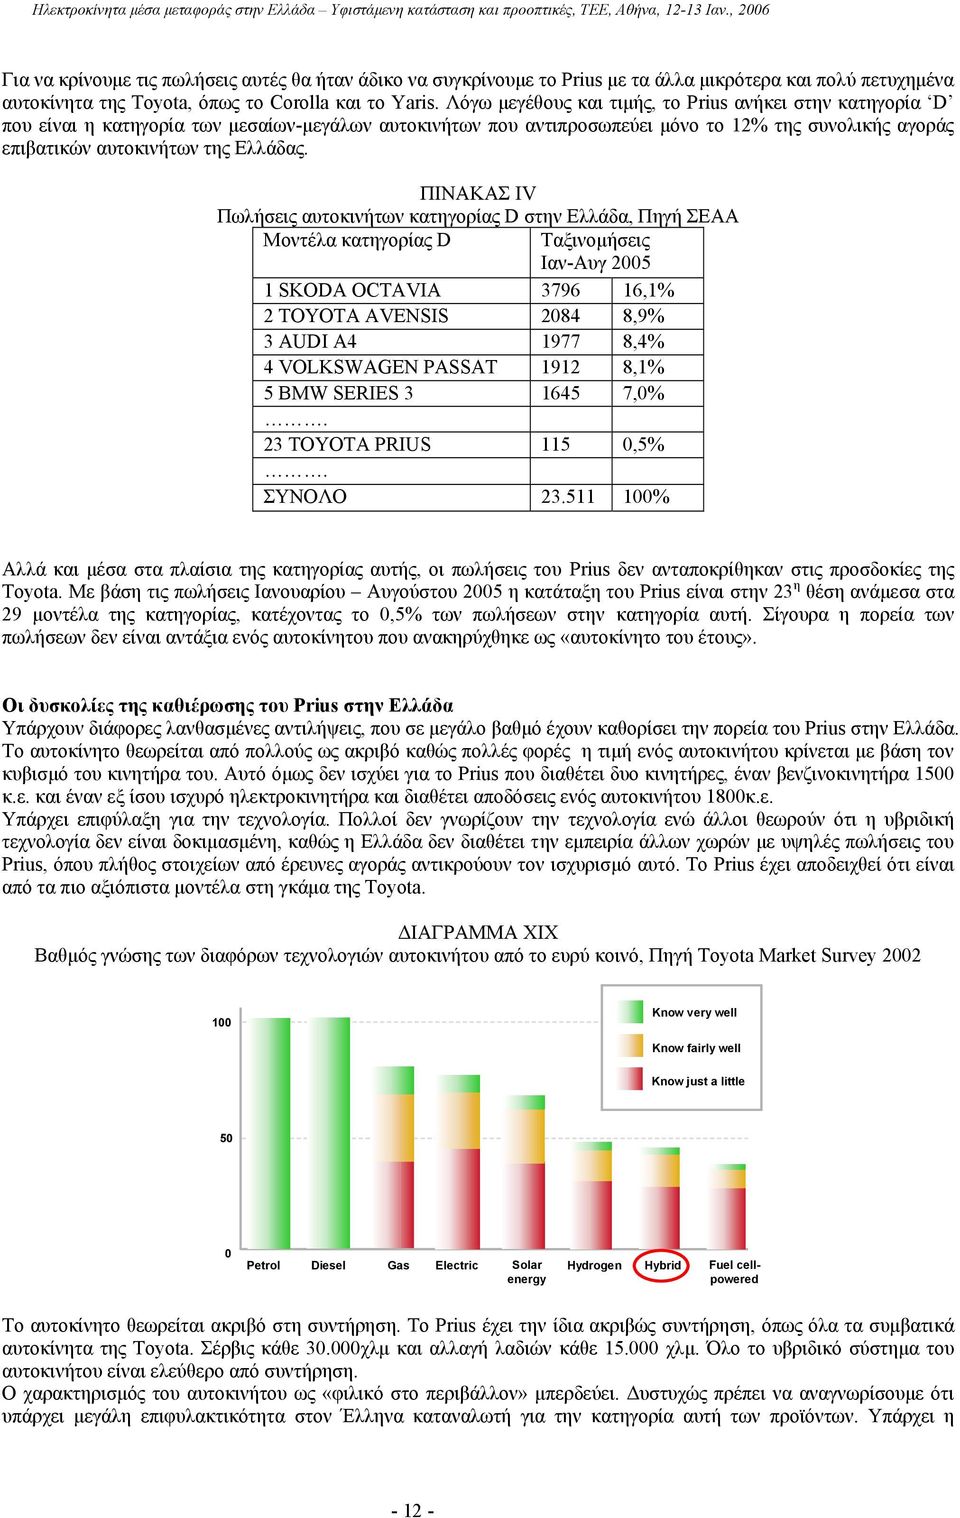 ΠΙΝΑΚΑΣ IV Πωλήσεις αυτοκινήτων κατηγορίας D στην Ελλάδα, Πηγή ΣΕΑΑ Μοντέλα κατηγορίας D Ταξινοµήσεις Ιαν-Αυγ 2005 1 SKODA OCTAVIA 3796 16,1% 2 TOYOTA AVENSIS 2084 8,9% 3 AUDI A4 1977 8,4% 4